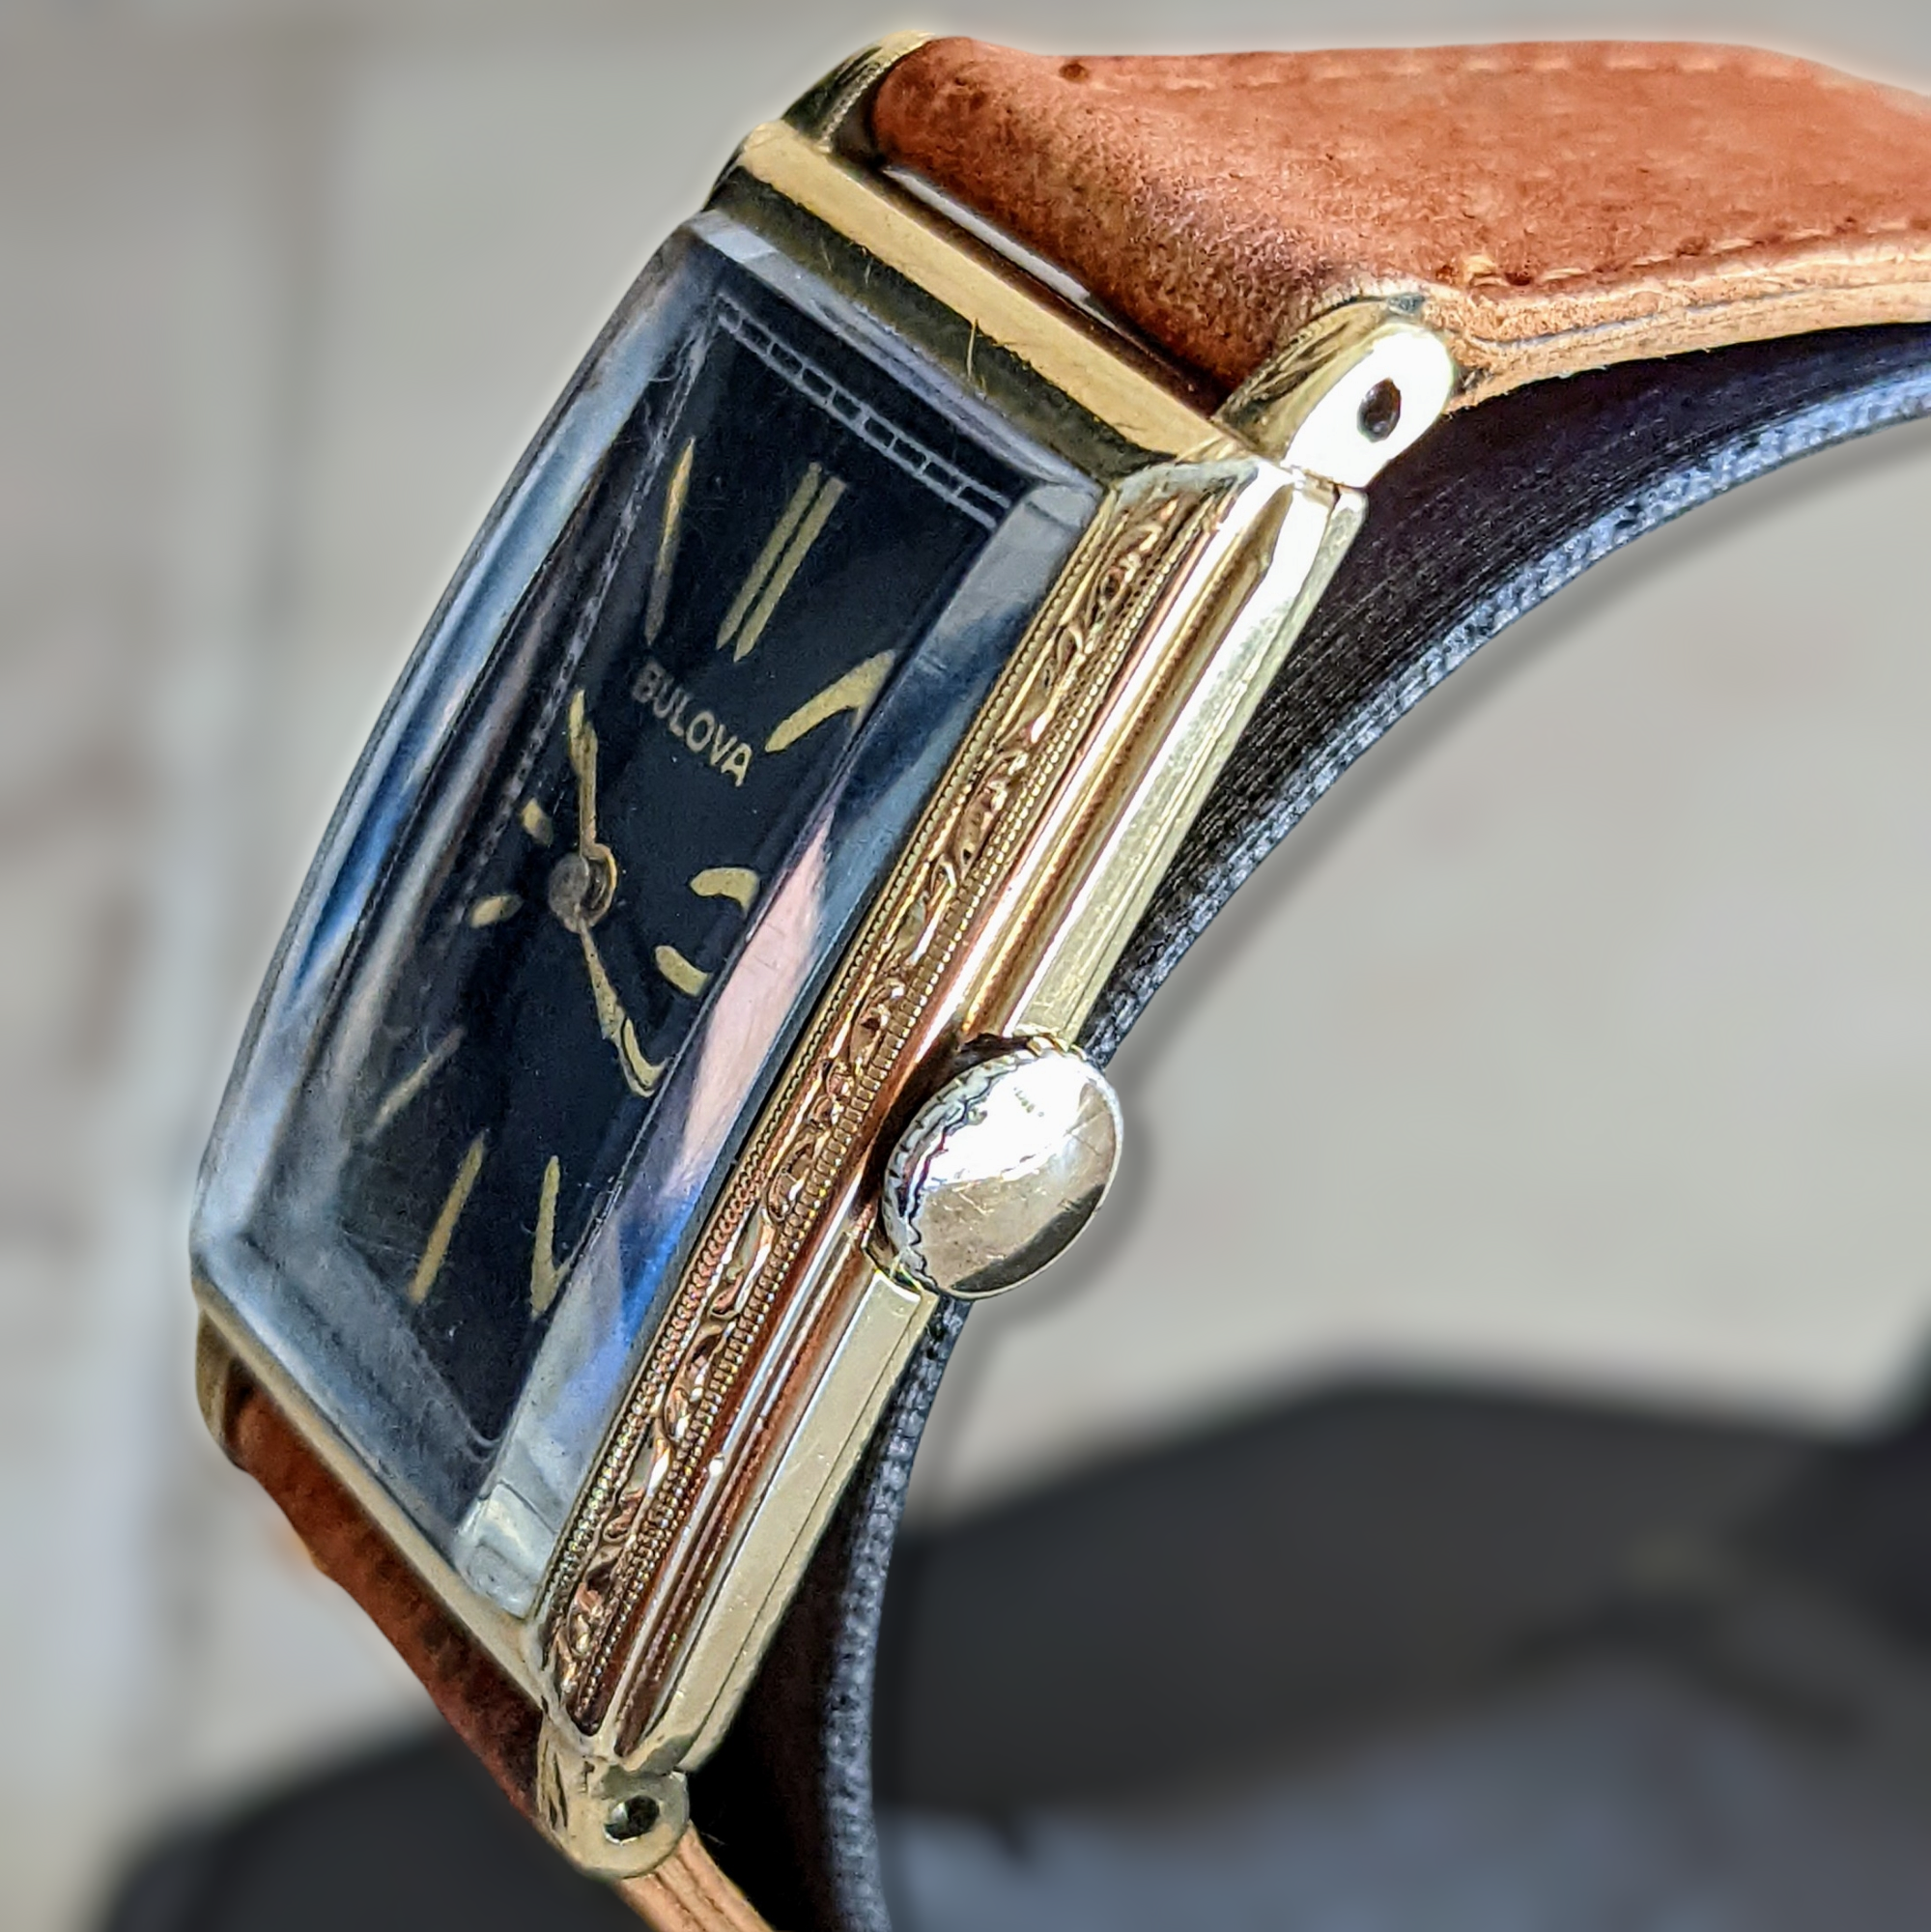 1936 BULOBA BRETON Watch 21 Jewels Cal. 8AE Swiss Made